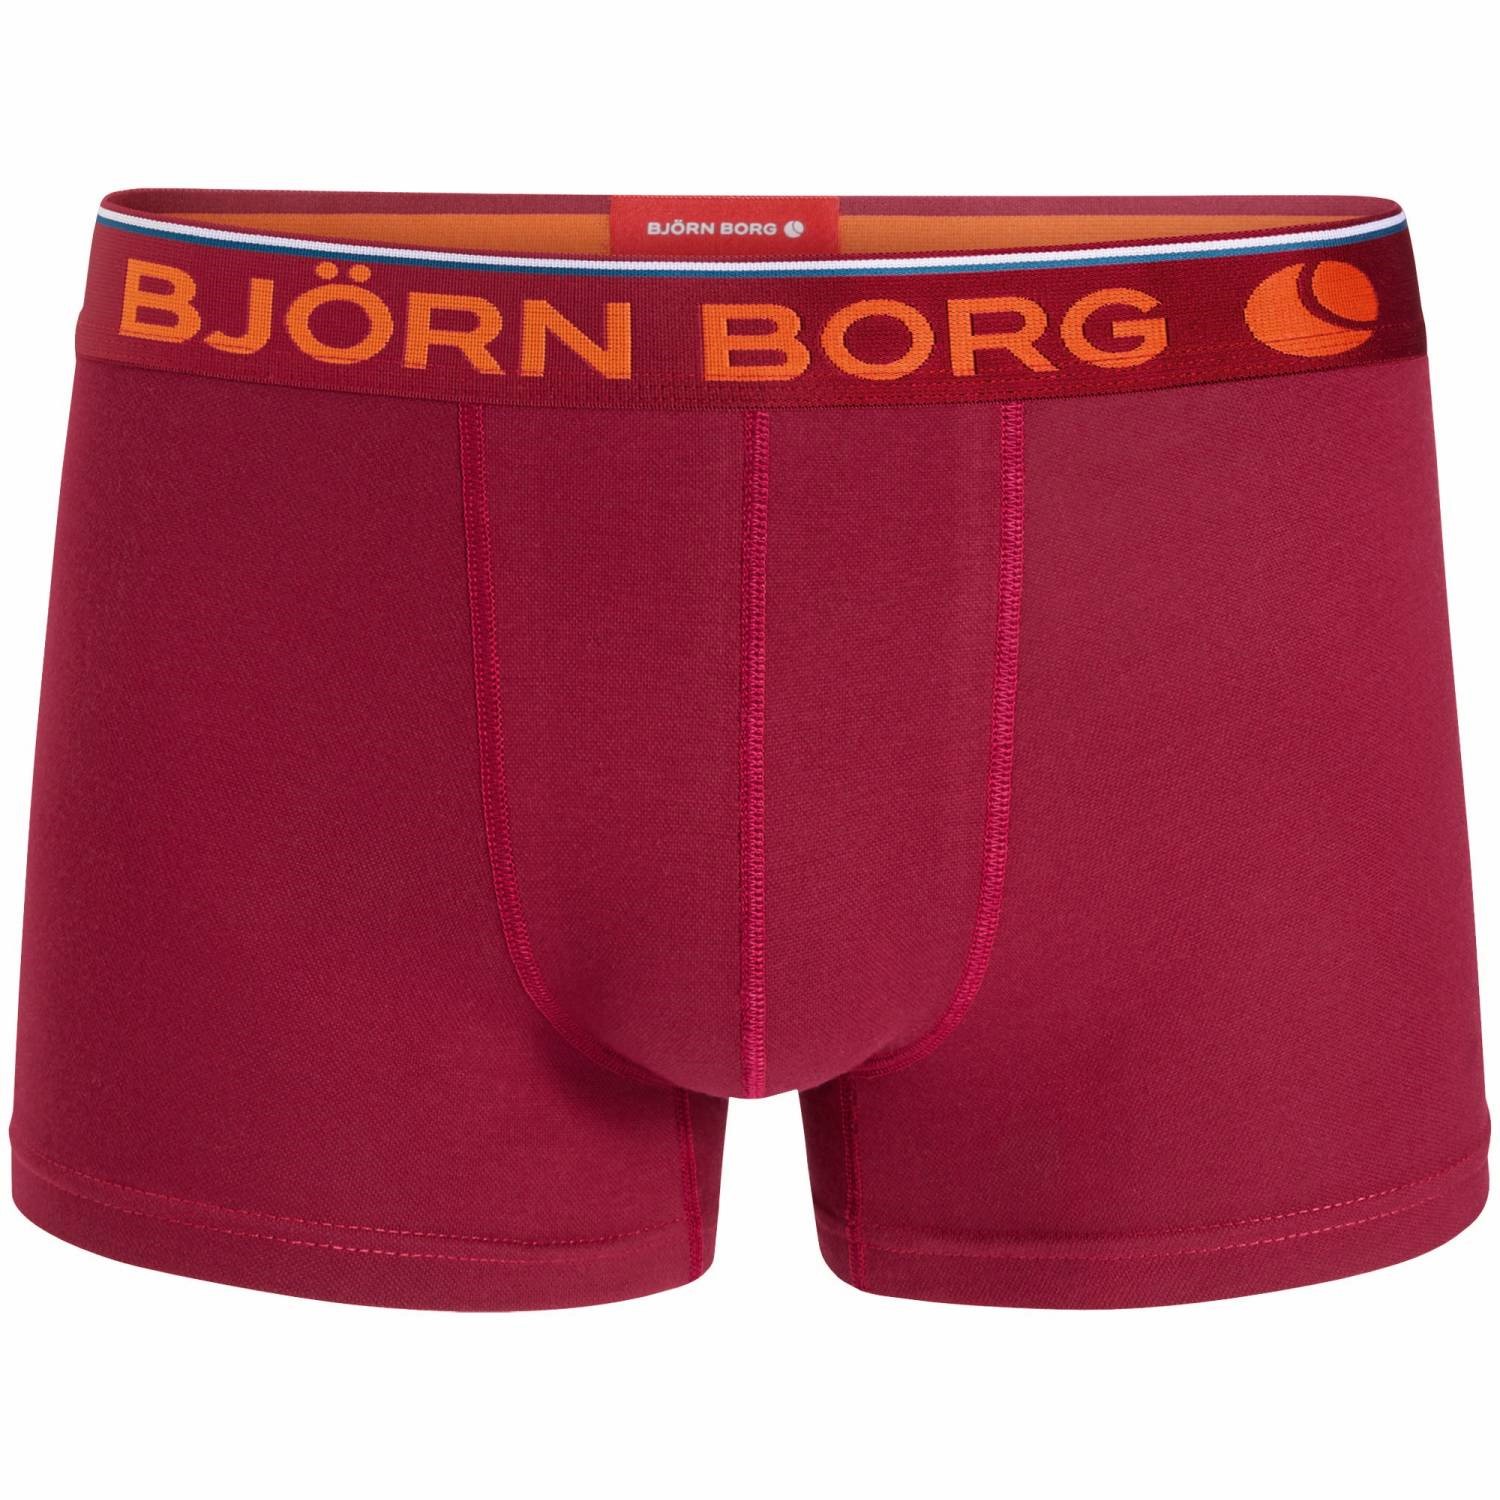 Björn Borg Solid Comfort Modal Short